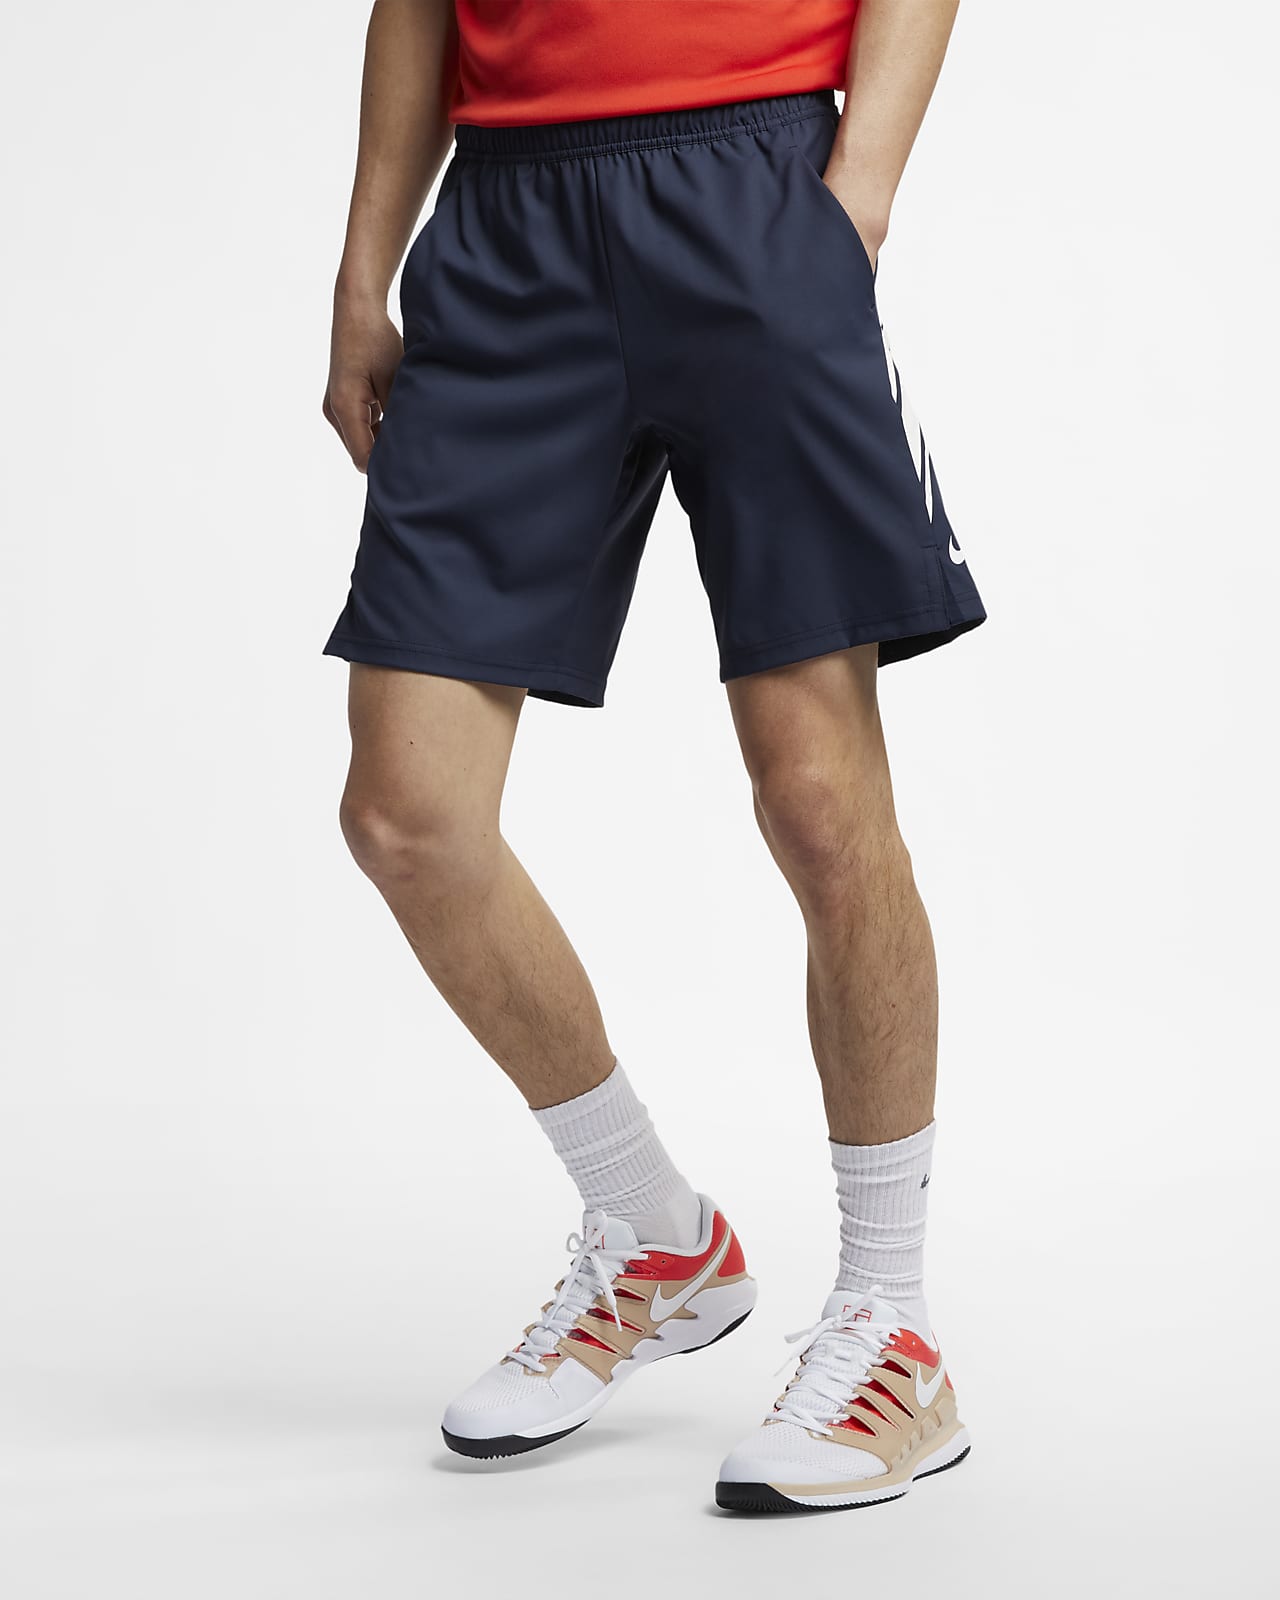 NikeCourt Dri-FIT 9" 男子网球短裤